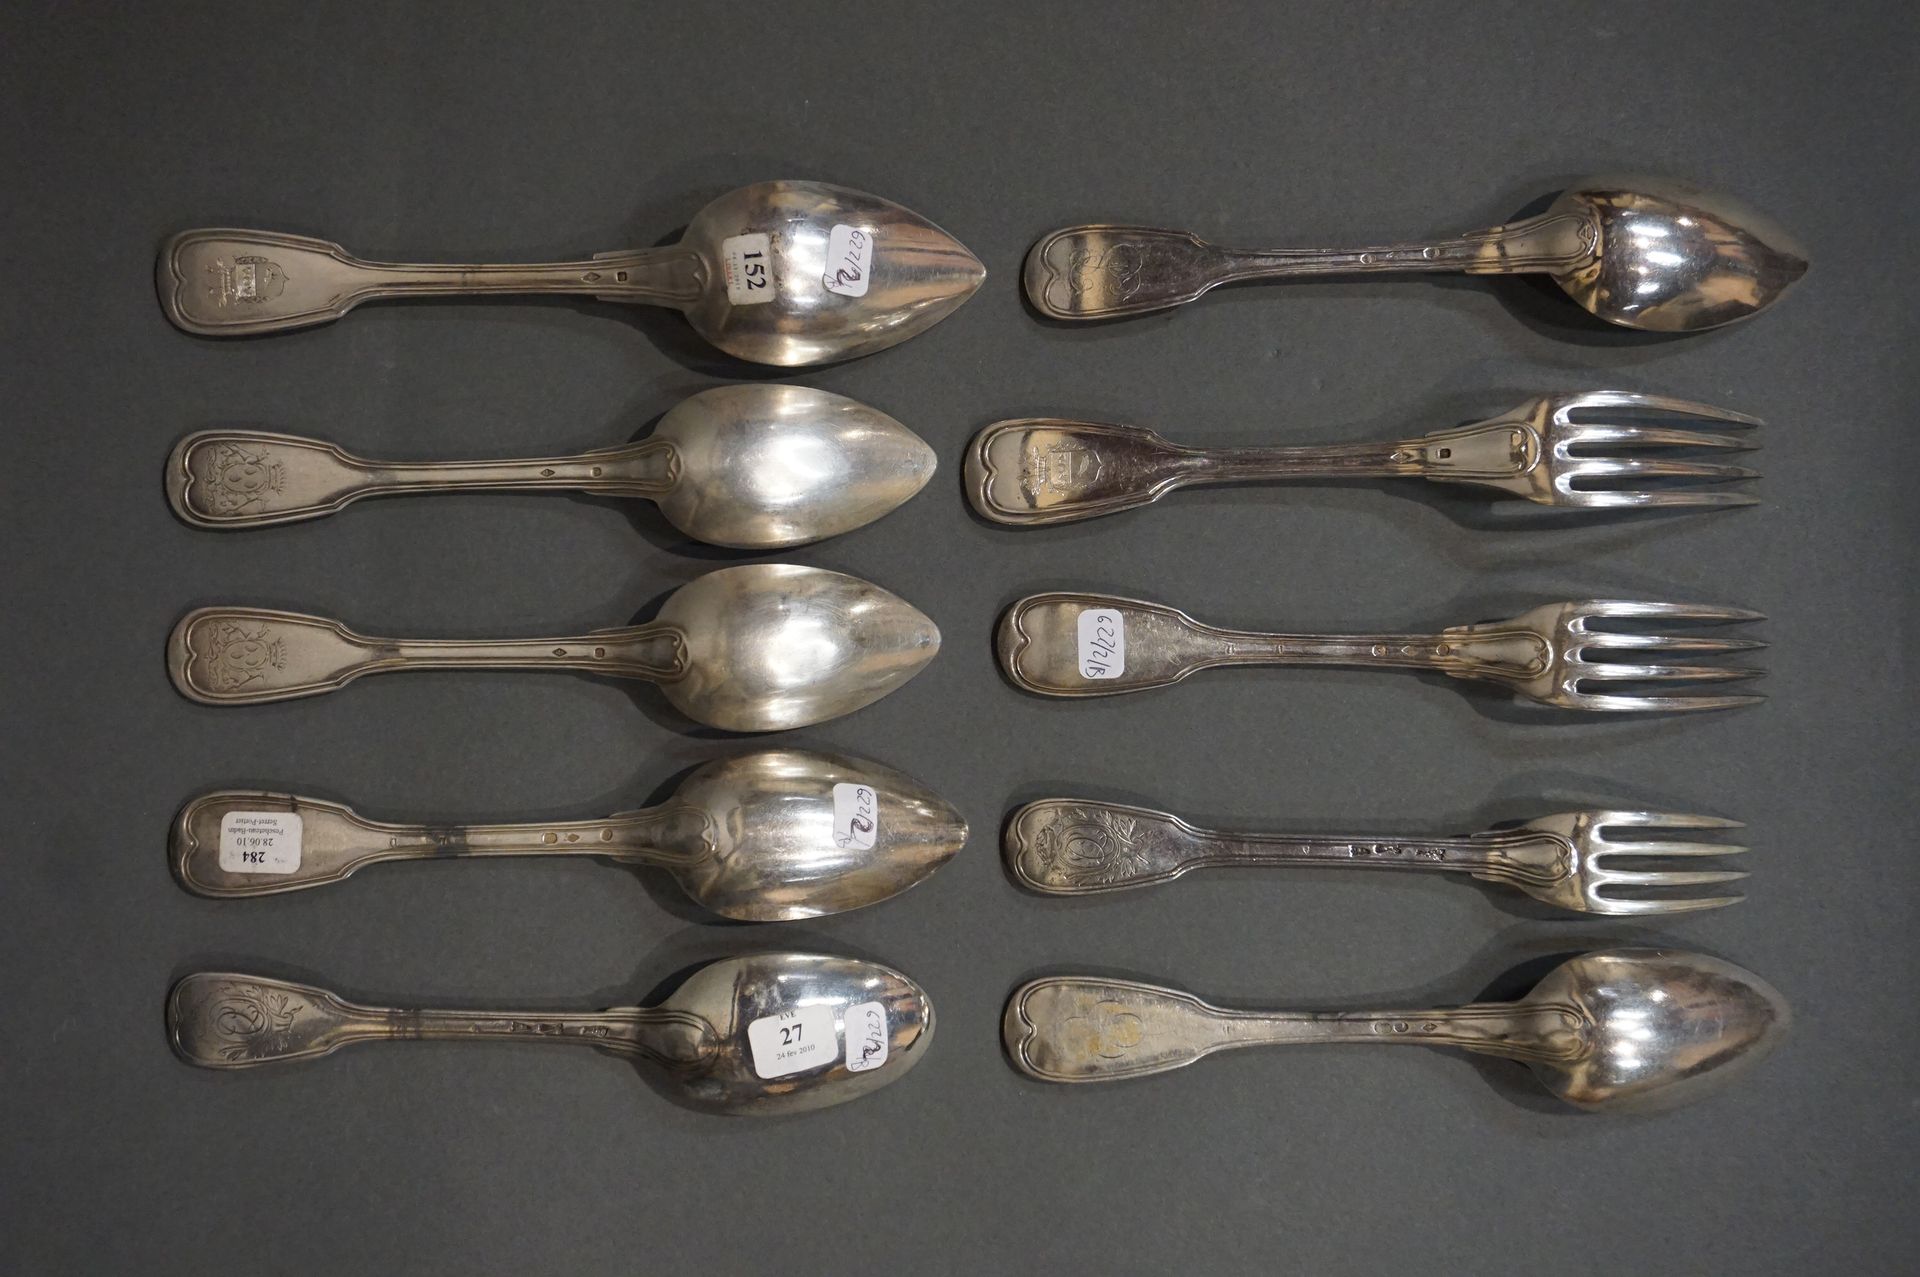 COUVERTS Siete cucharas grandes y tres tenedores grandes de plata, algunos blaso&hellip;